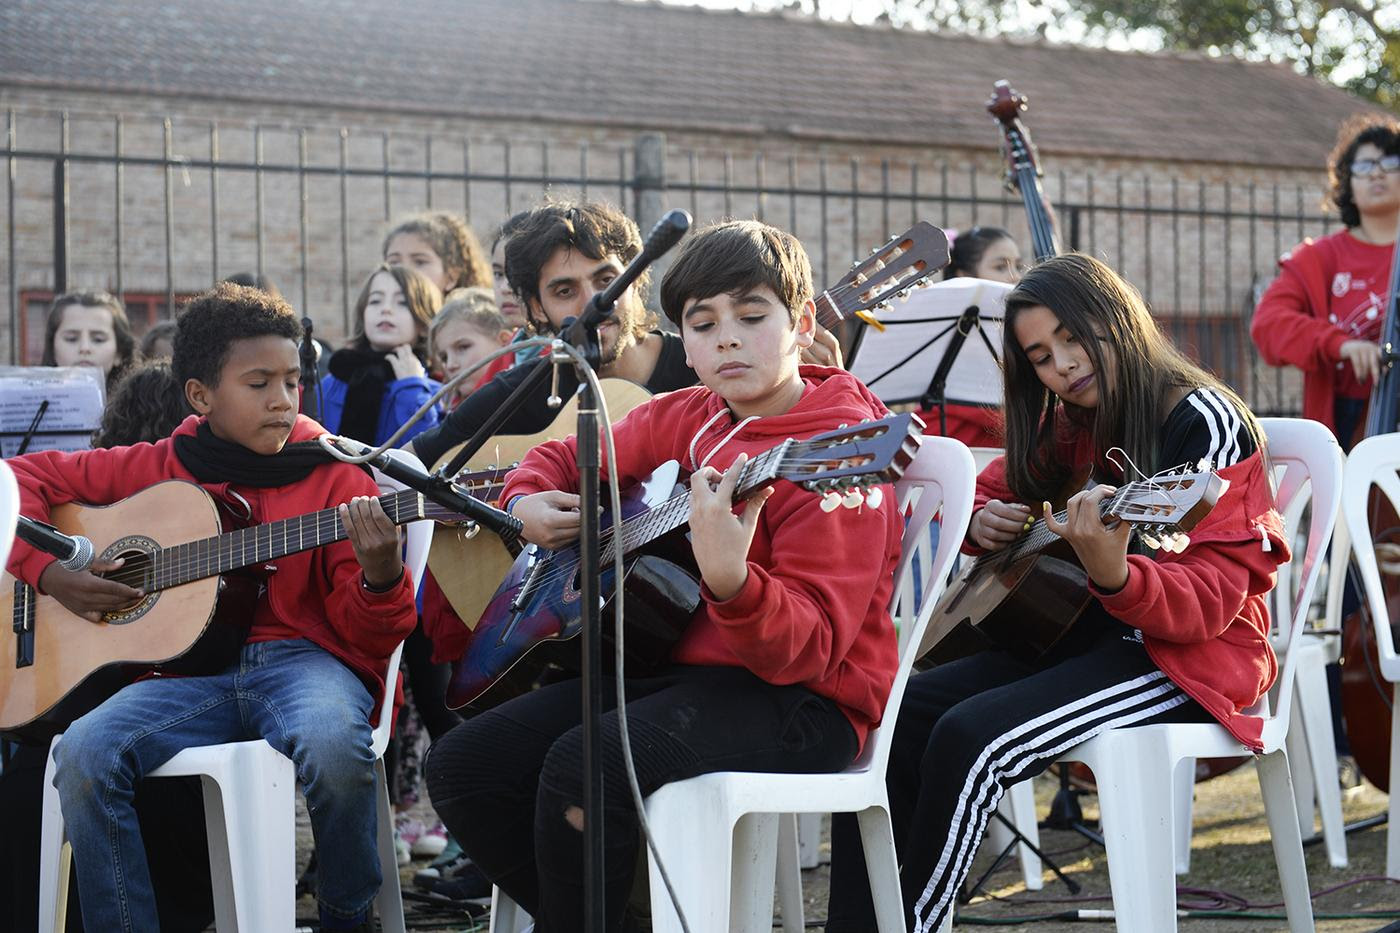  Comenzó “Partituras en el barrio”, un ciclo que lleva música a todo el distrito